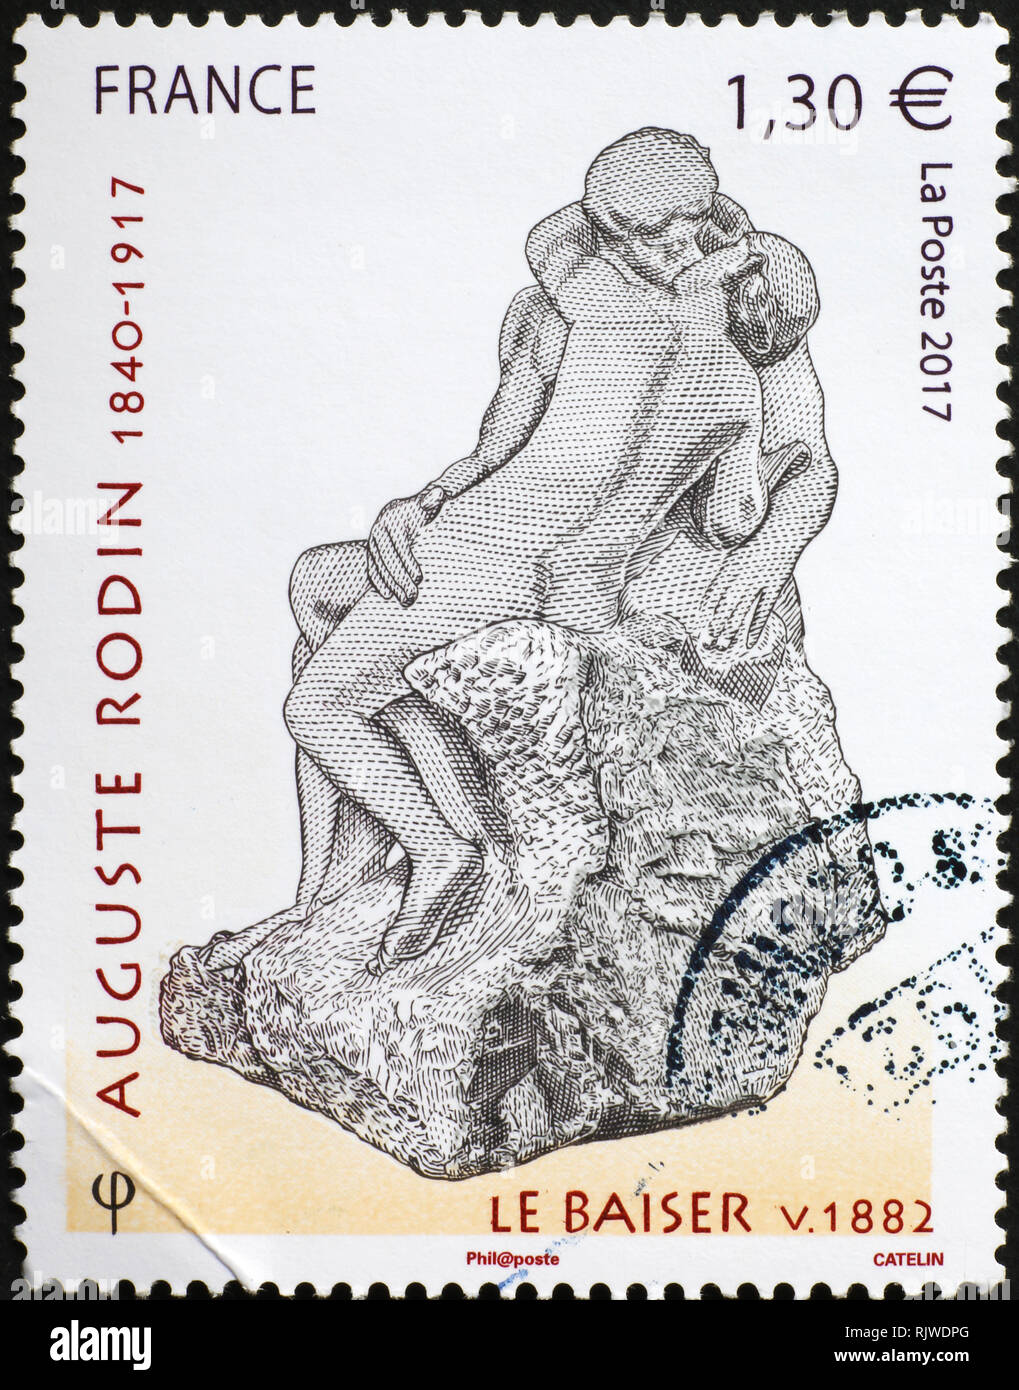 Les amoureux de la statue d'Auguste Rodin sur timbre-poste Banque D'Images